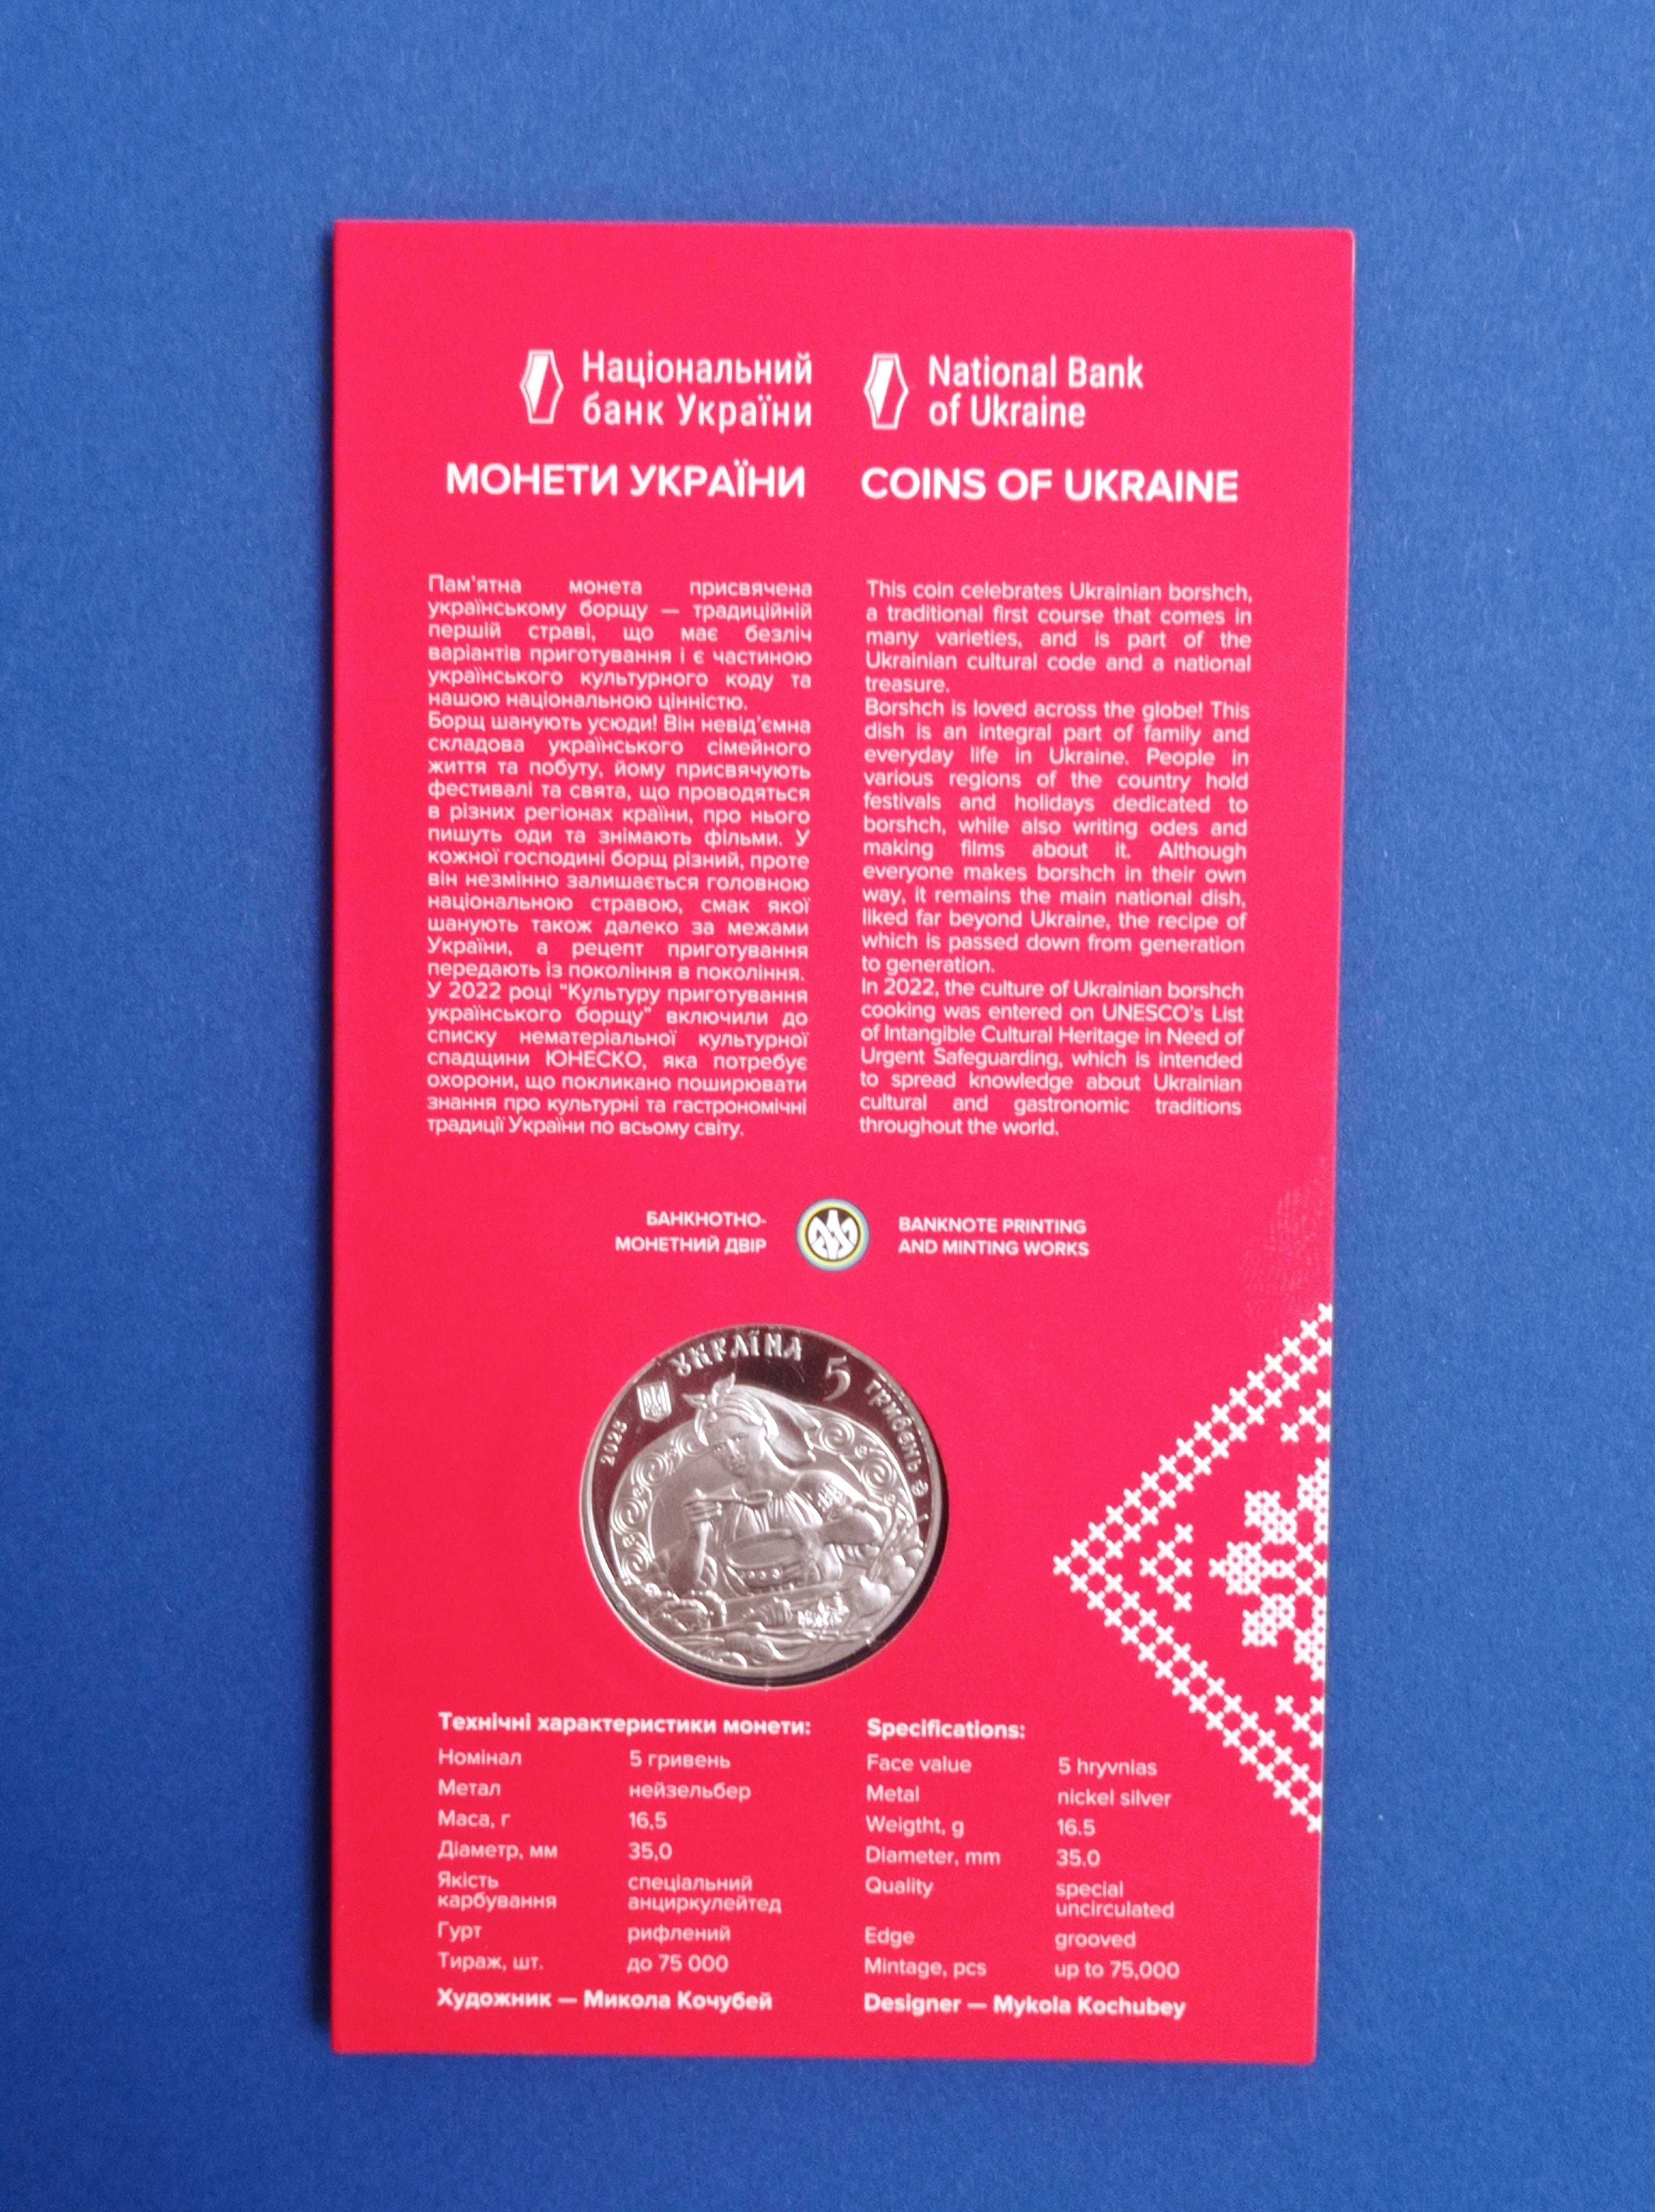 Продам ювілейну 5 грн. монету - Український борщ - 500 грн.